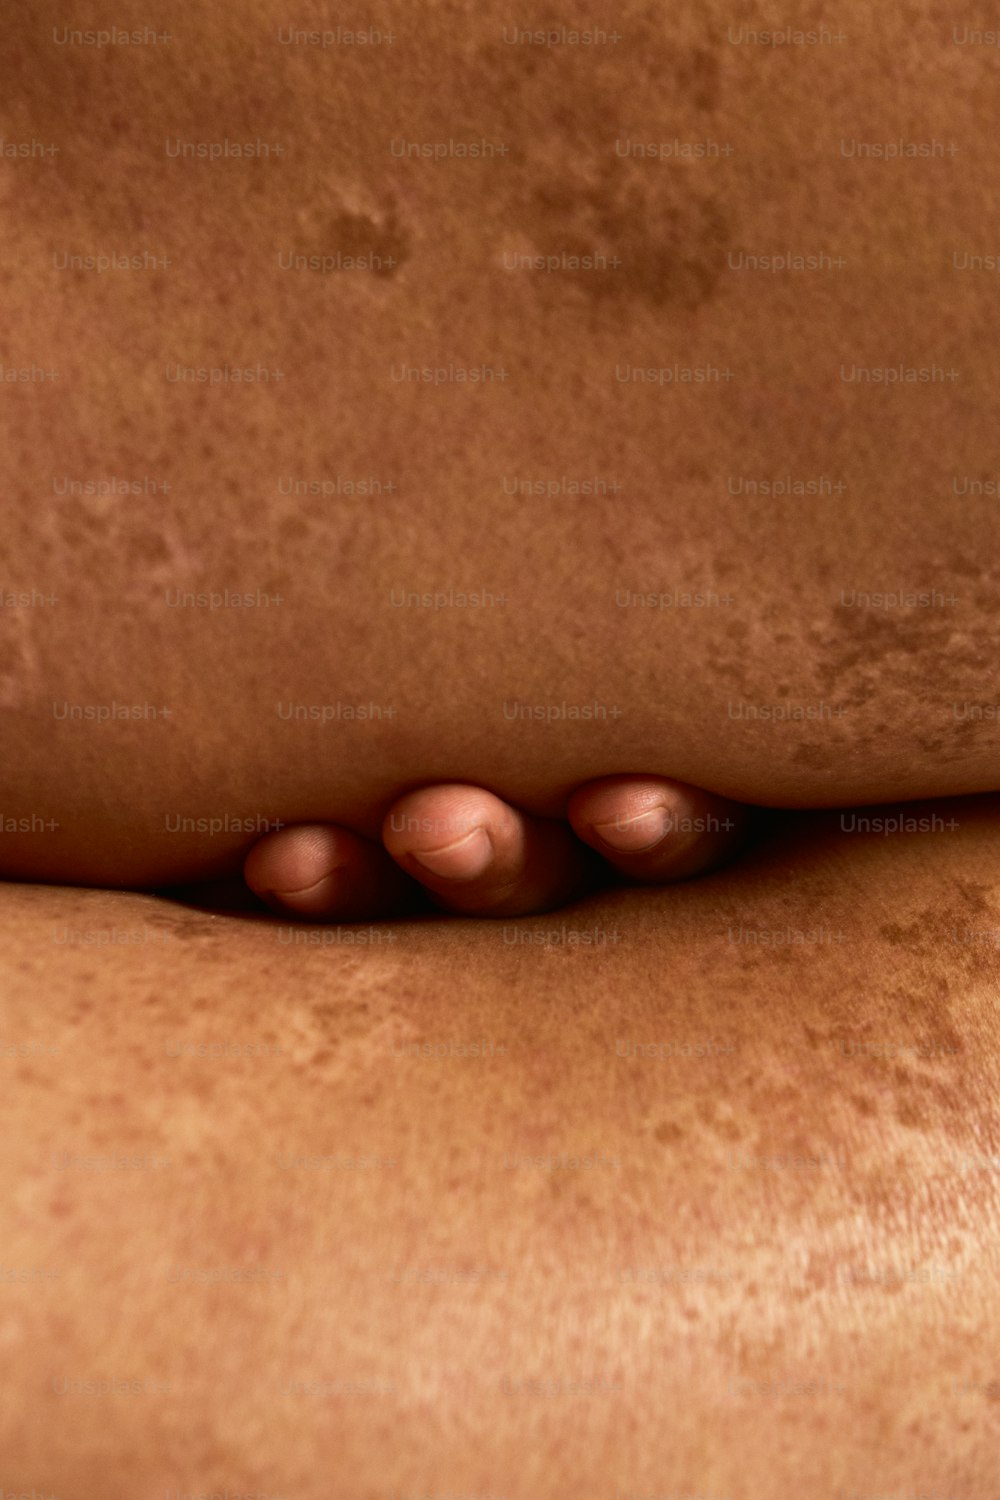 um close up das costas de uma pessoa com acne nele